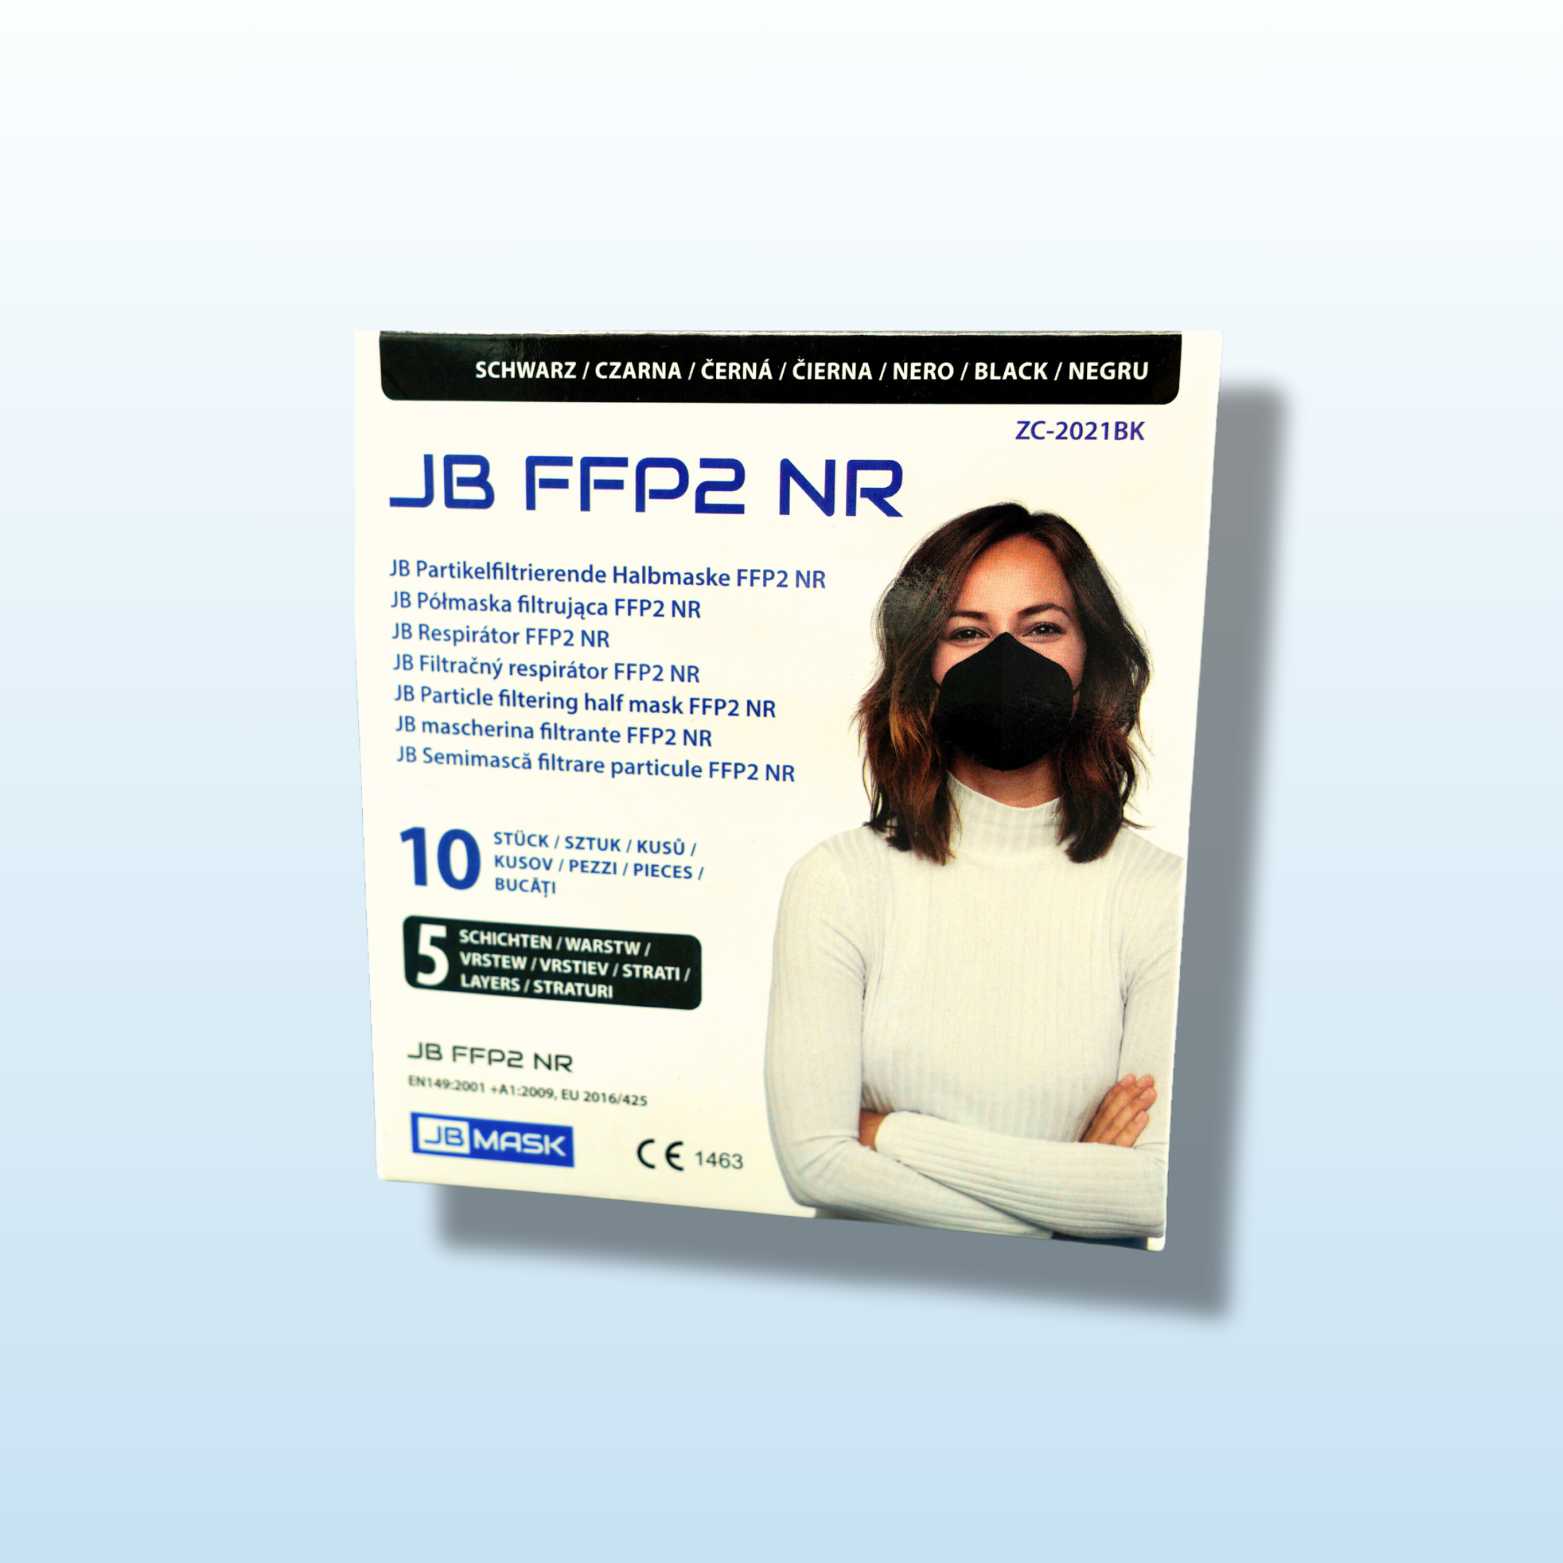 Farbige FFP2 Maske JB I Baby Blue / Mint Green / Navy Blue / Pink / Yellow I 10er Pack